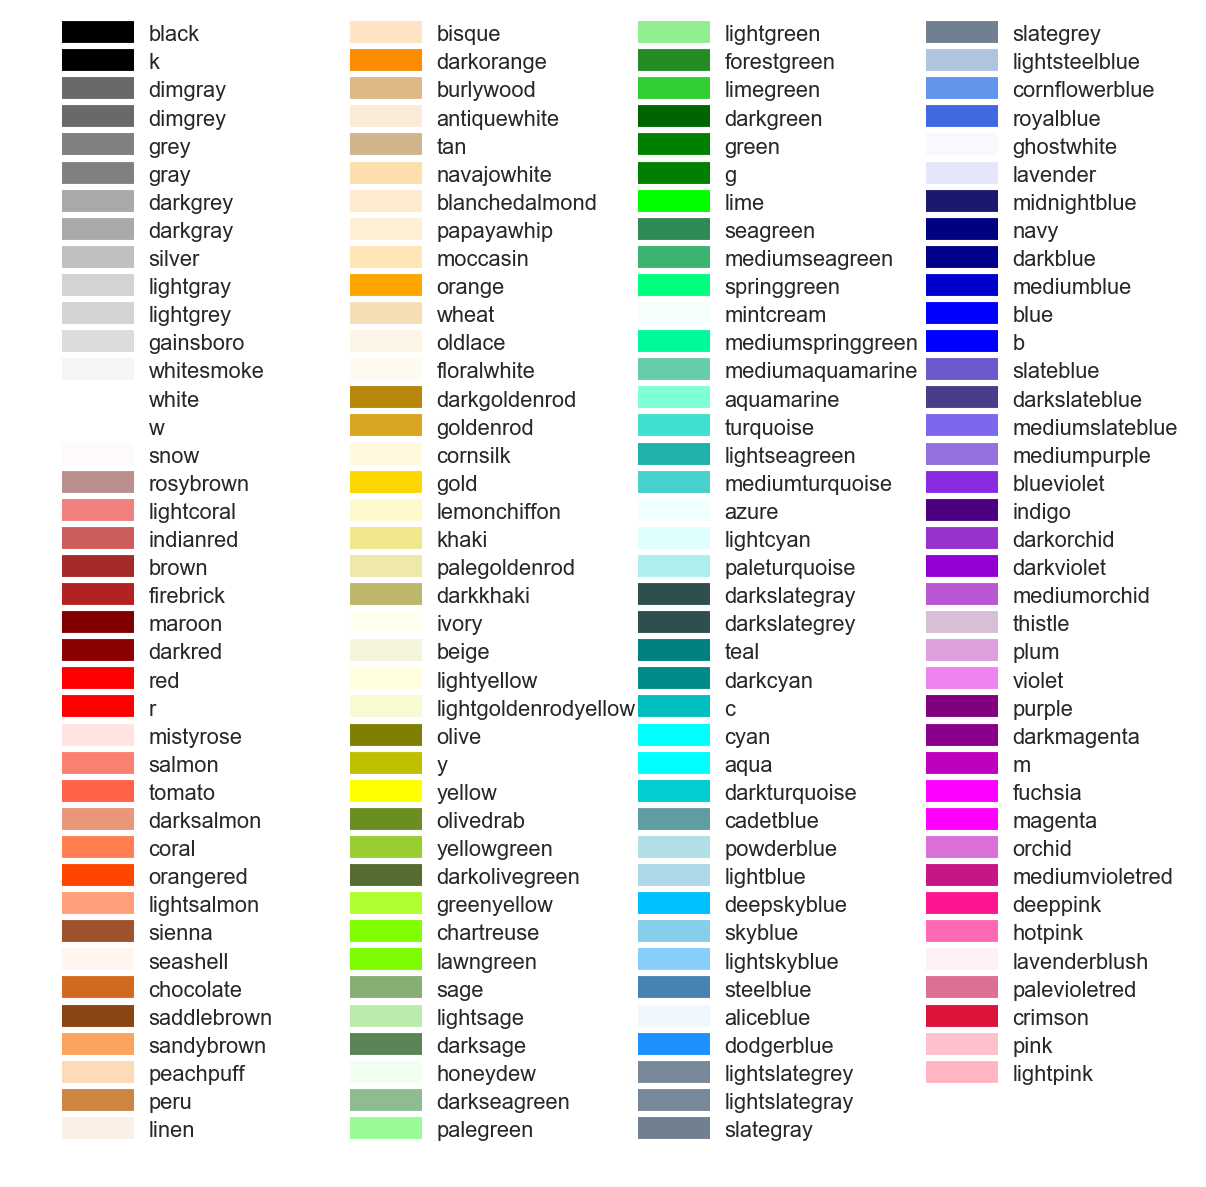 matplotlib_colors.png